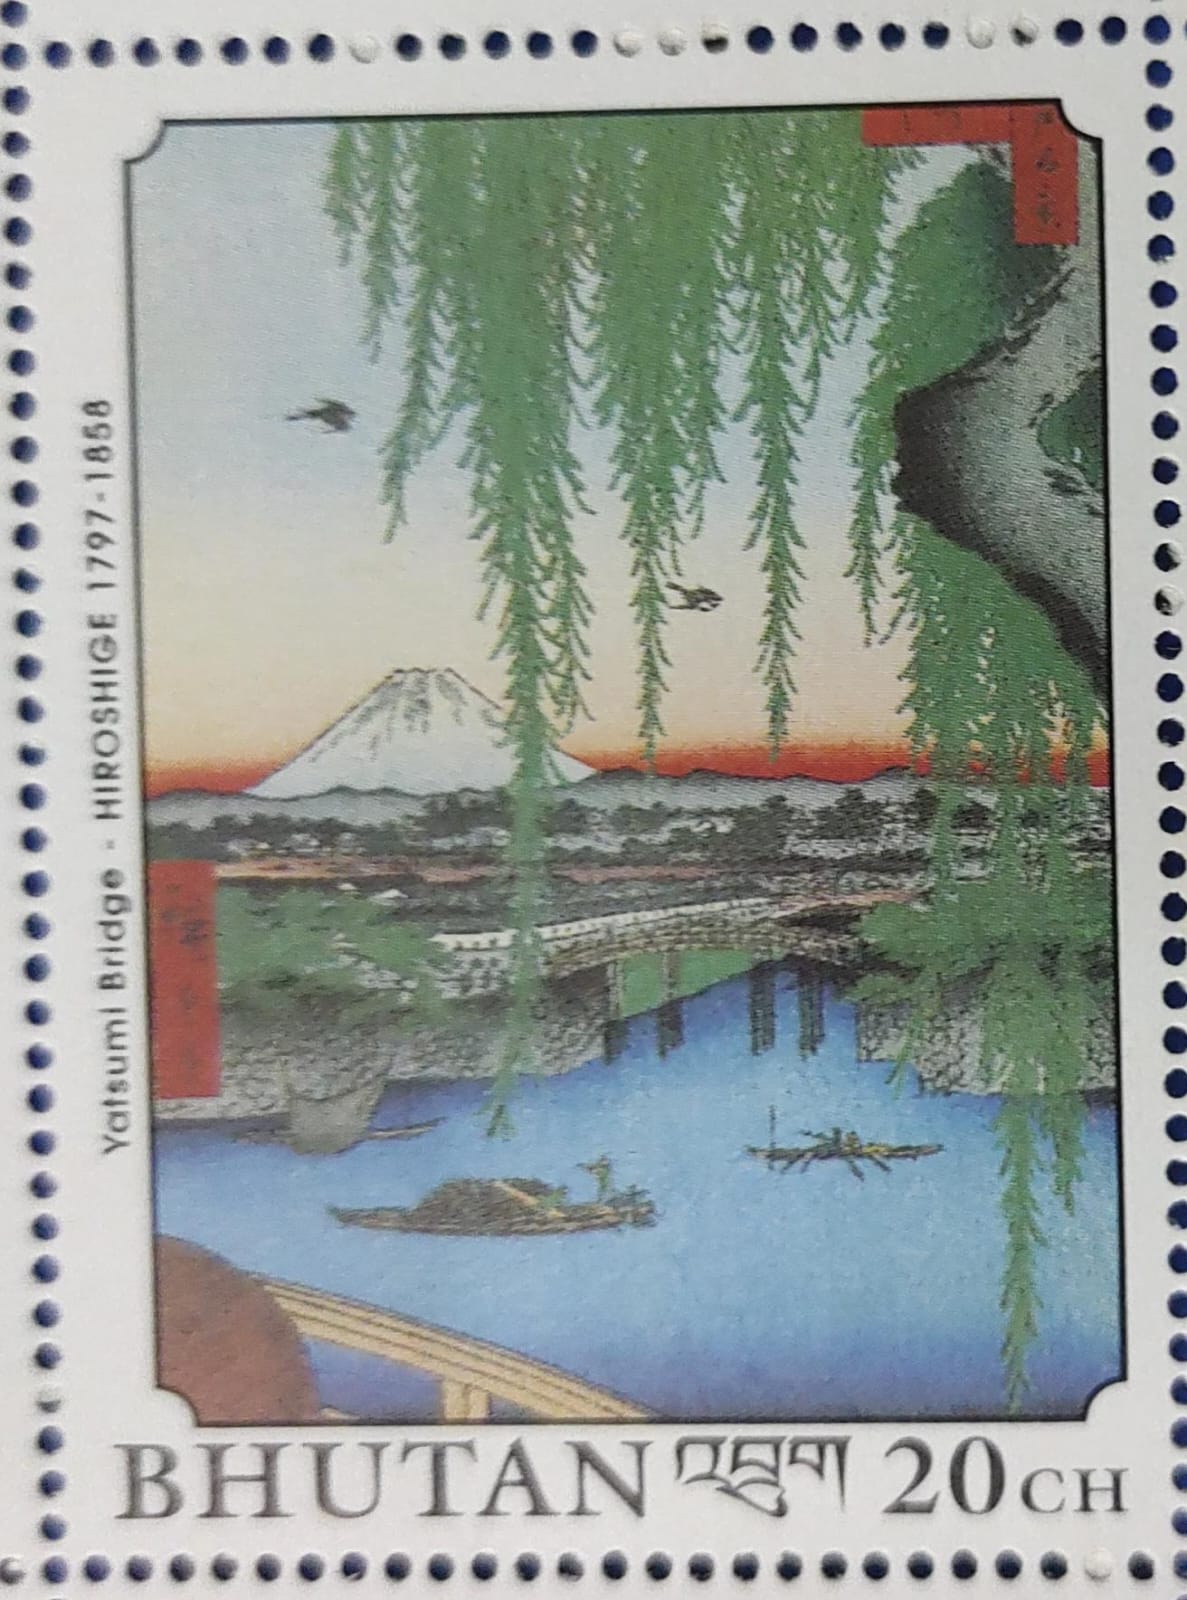 Bhutan Disney stamp- Yatsumi Bridge - Hiroshige 1797-1858